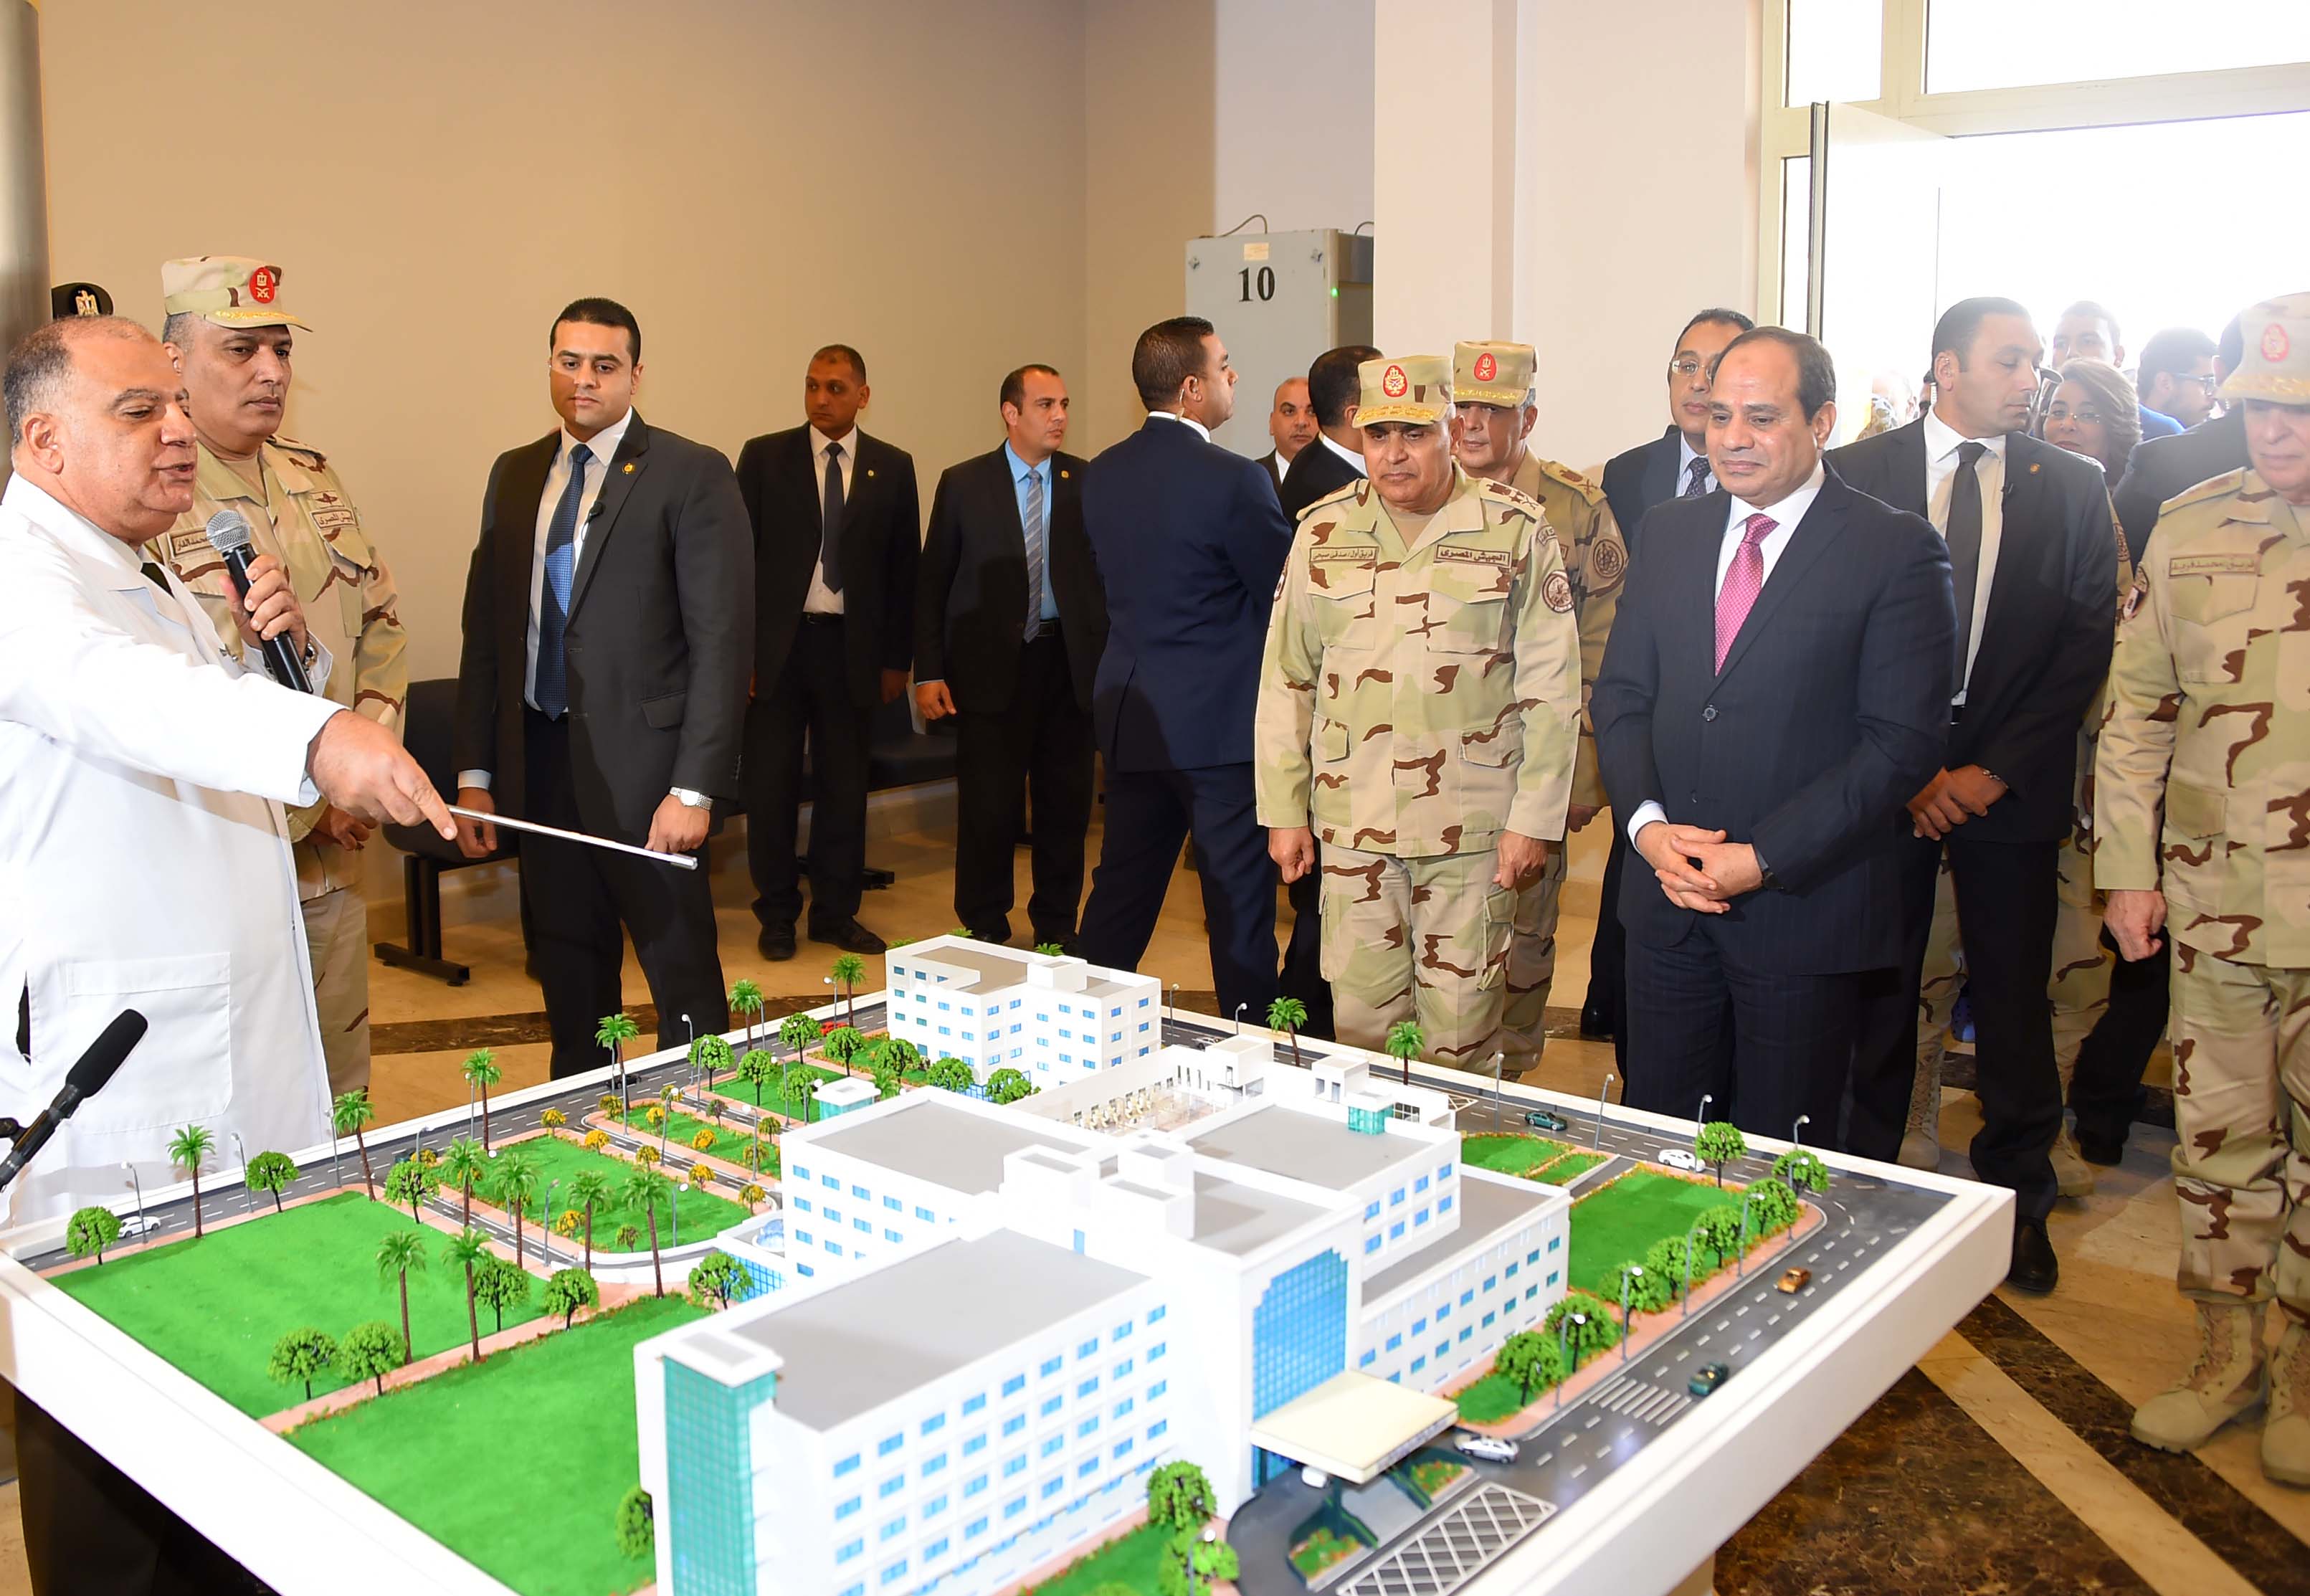 صور افتتاح السيد الرئيس لأعمال تطوير المجمع الطبي للقوات المسلحة بالمعادي12-1-2018 (2)